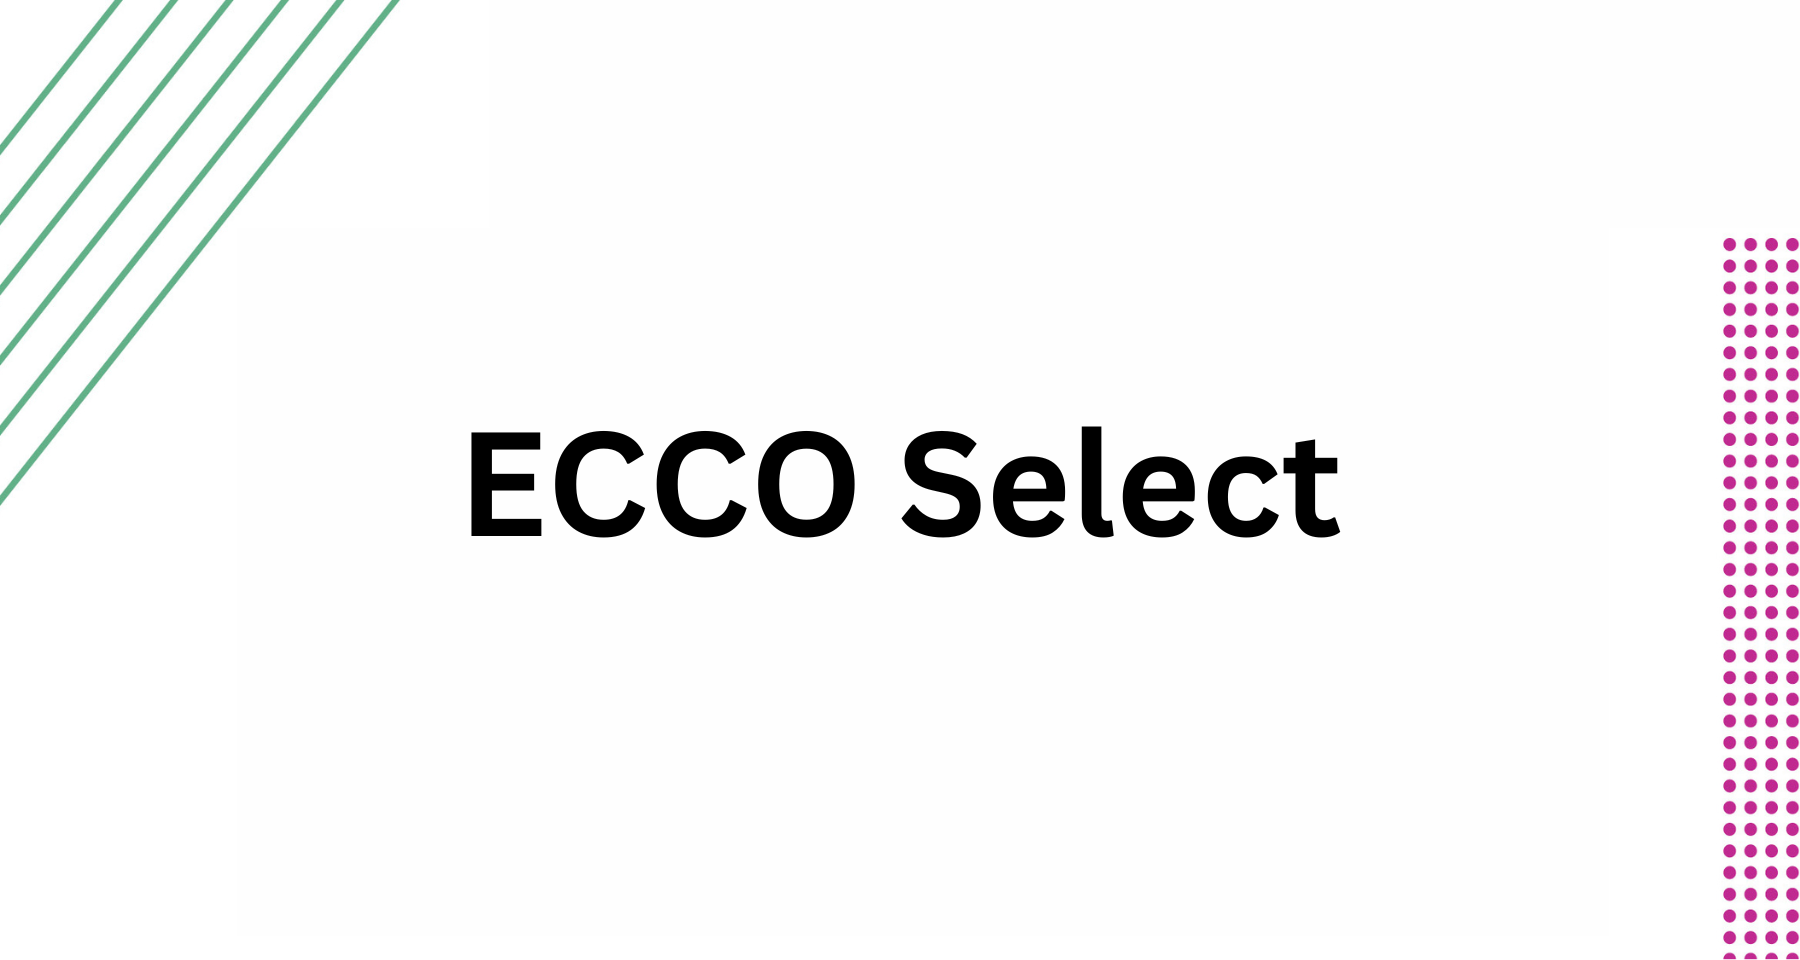 ECCO Select